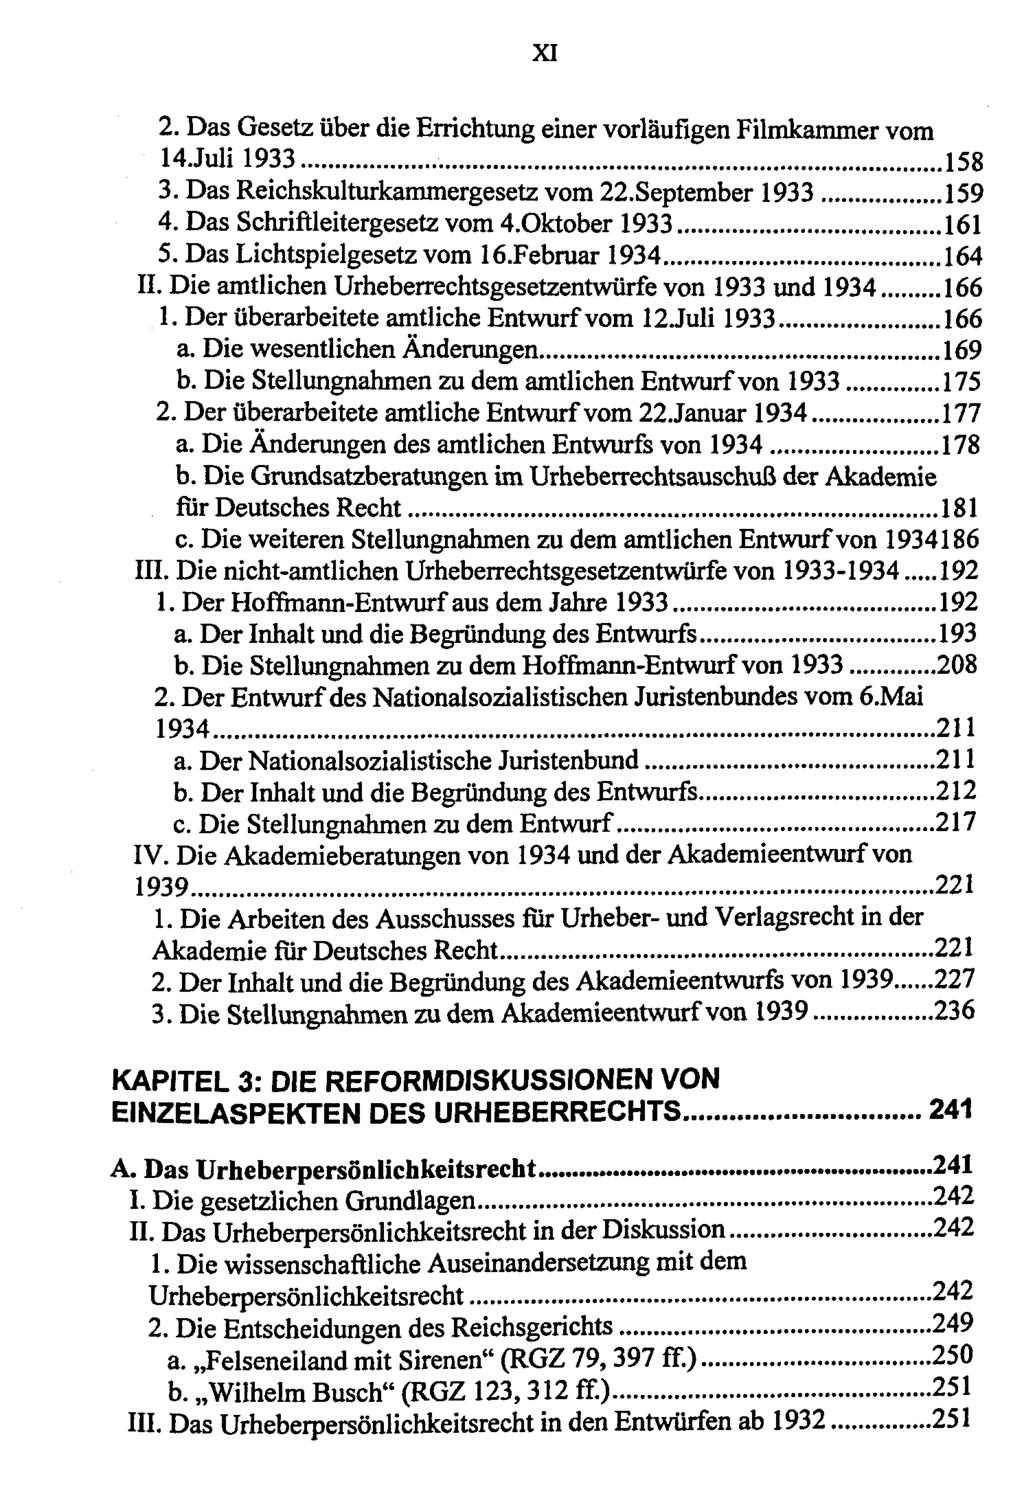 XI 2. Das Gesetz über die Errichtung einer vorläufigen Filmkammer vom 14Juli 1933 158 3. Das Reichskulturkammergesetz vom 22.September 1933 159 4. Das Schriftleitergesetz vom 4.Oktober 1933 161 5.